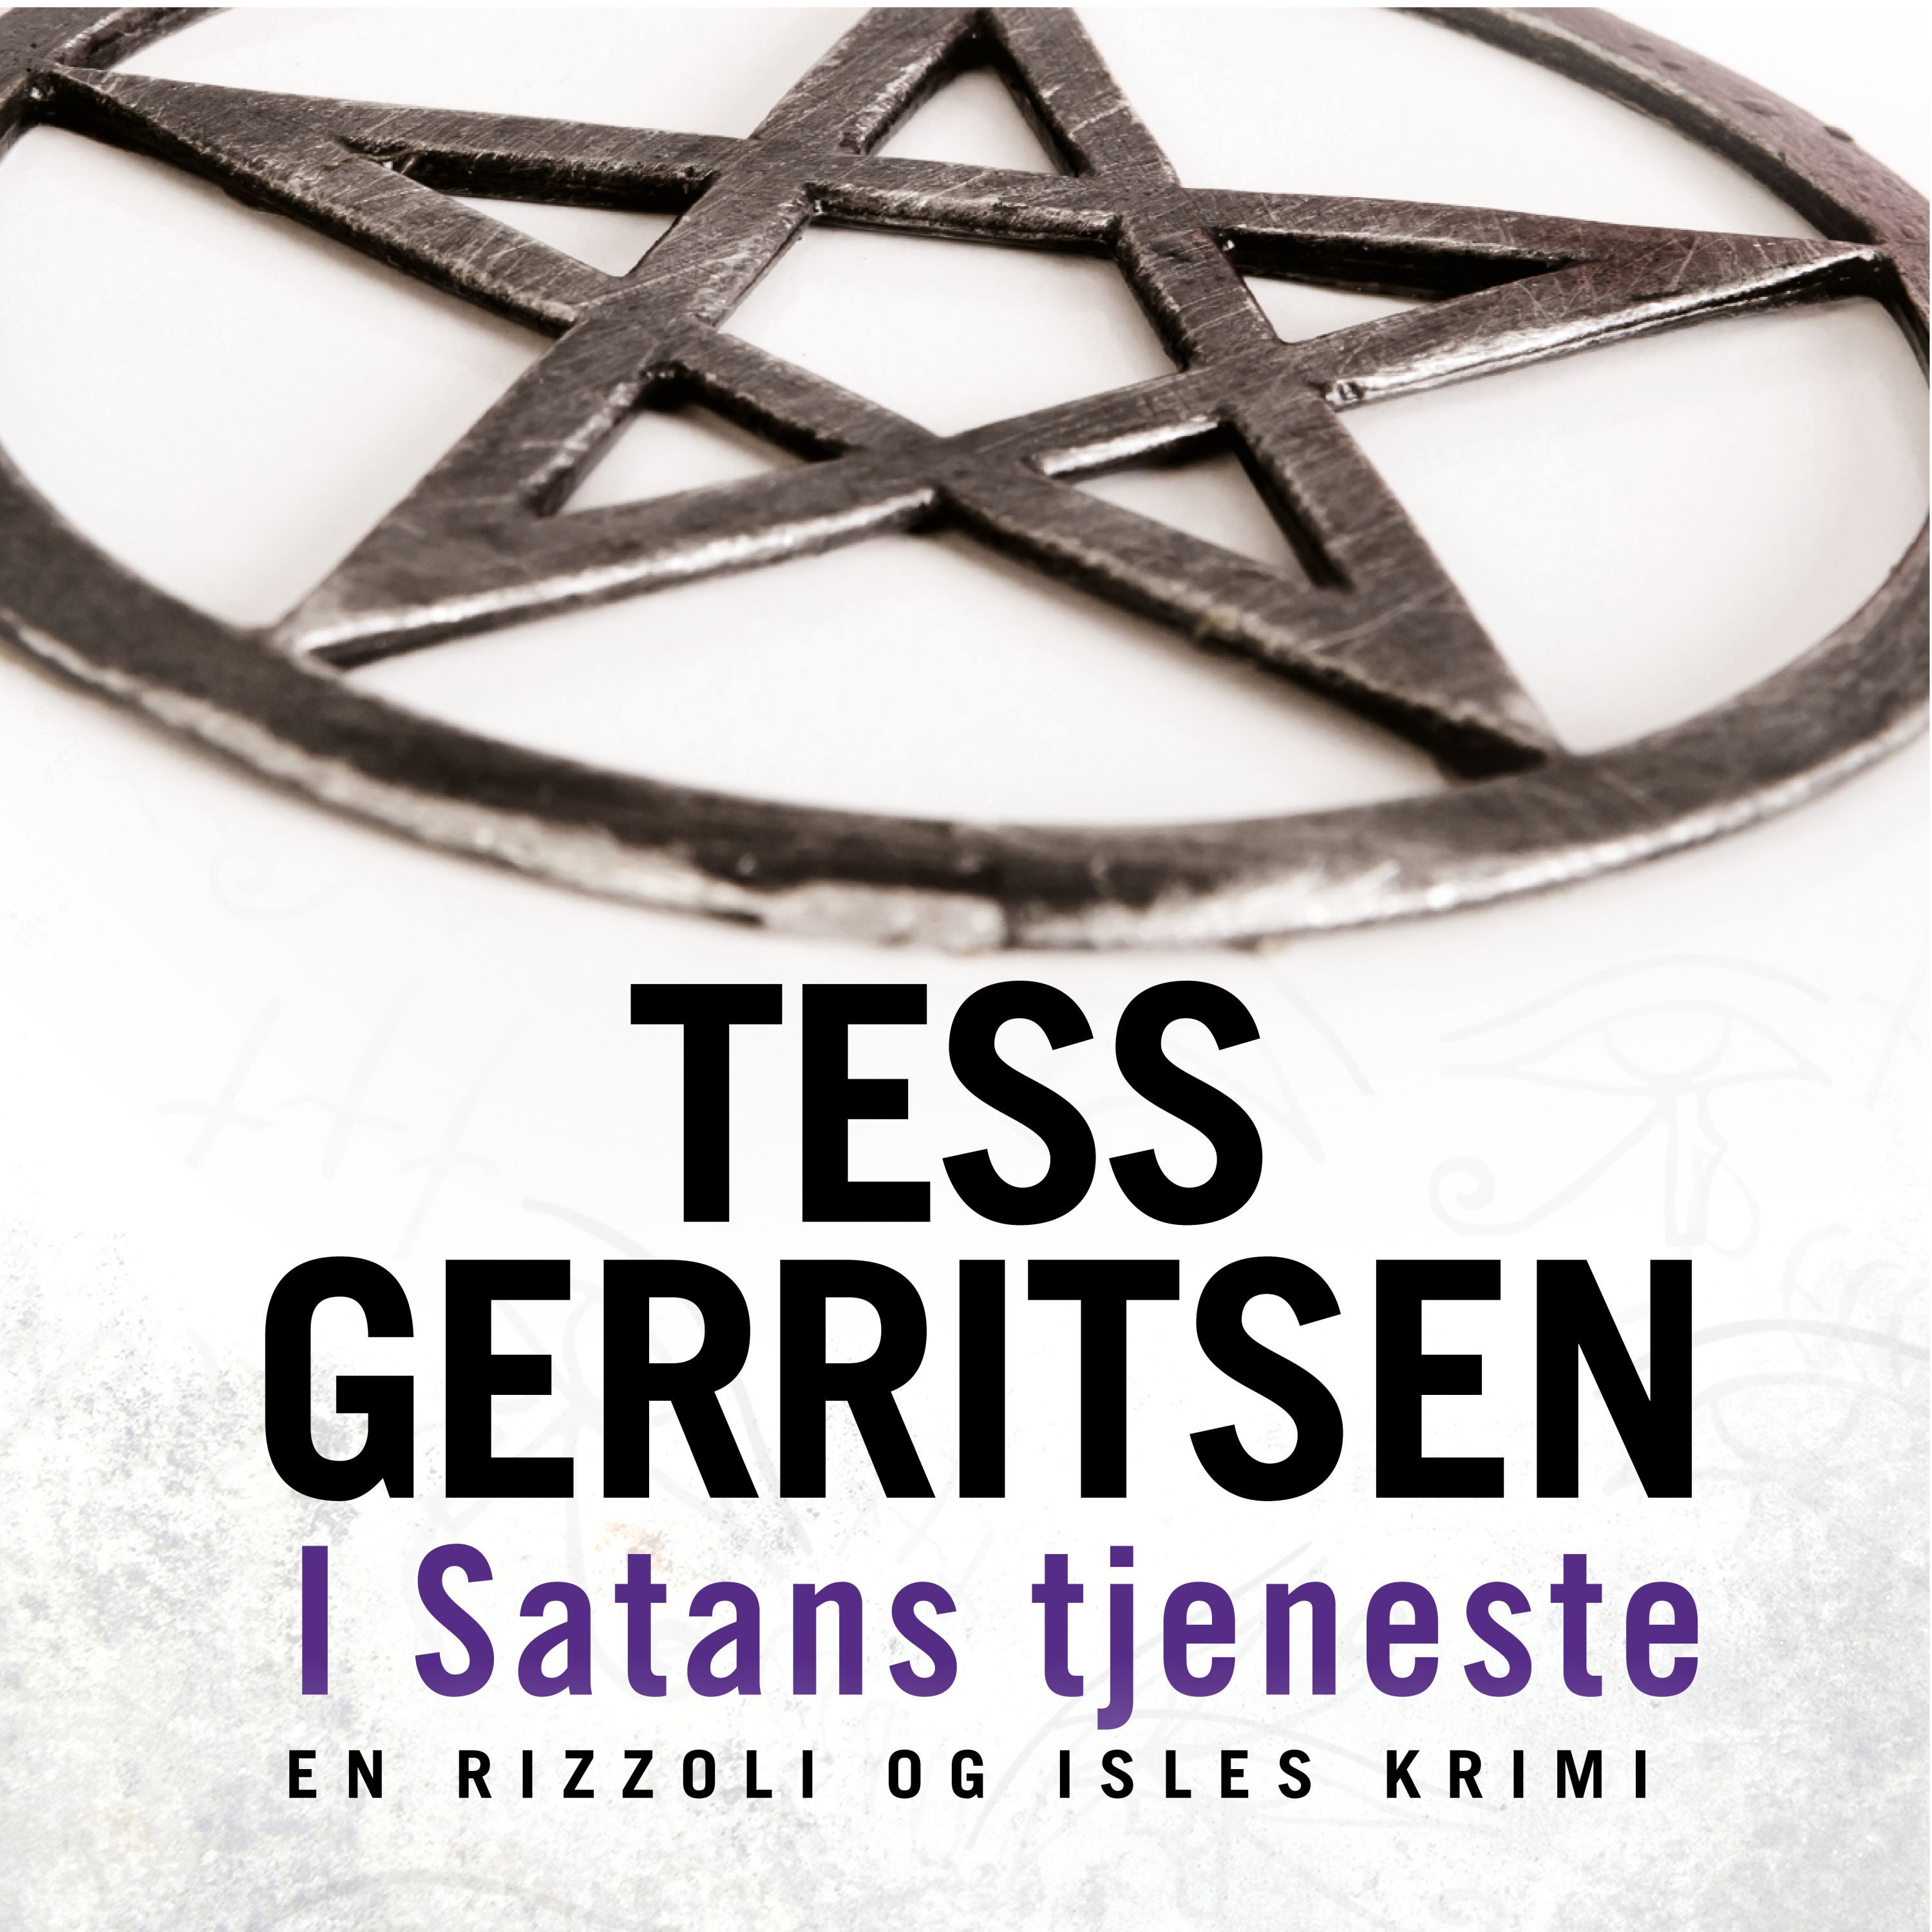 I Satans tjeneste, ljudbok av Tess Gerritsen